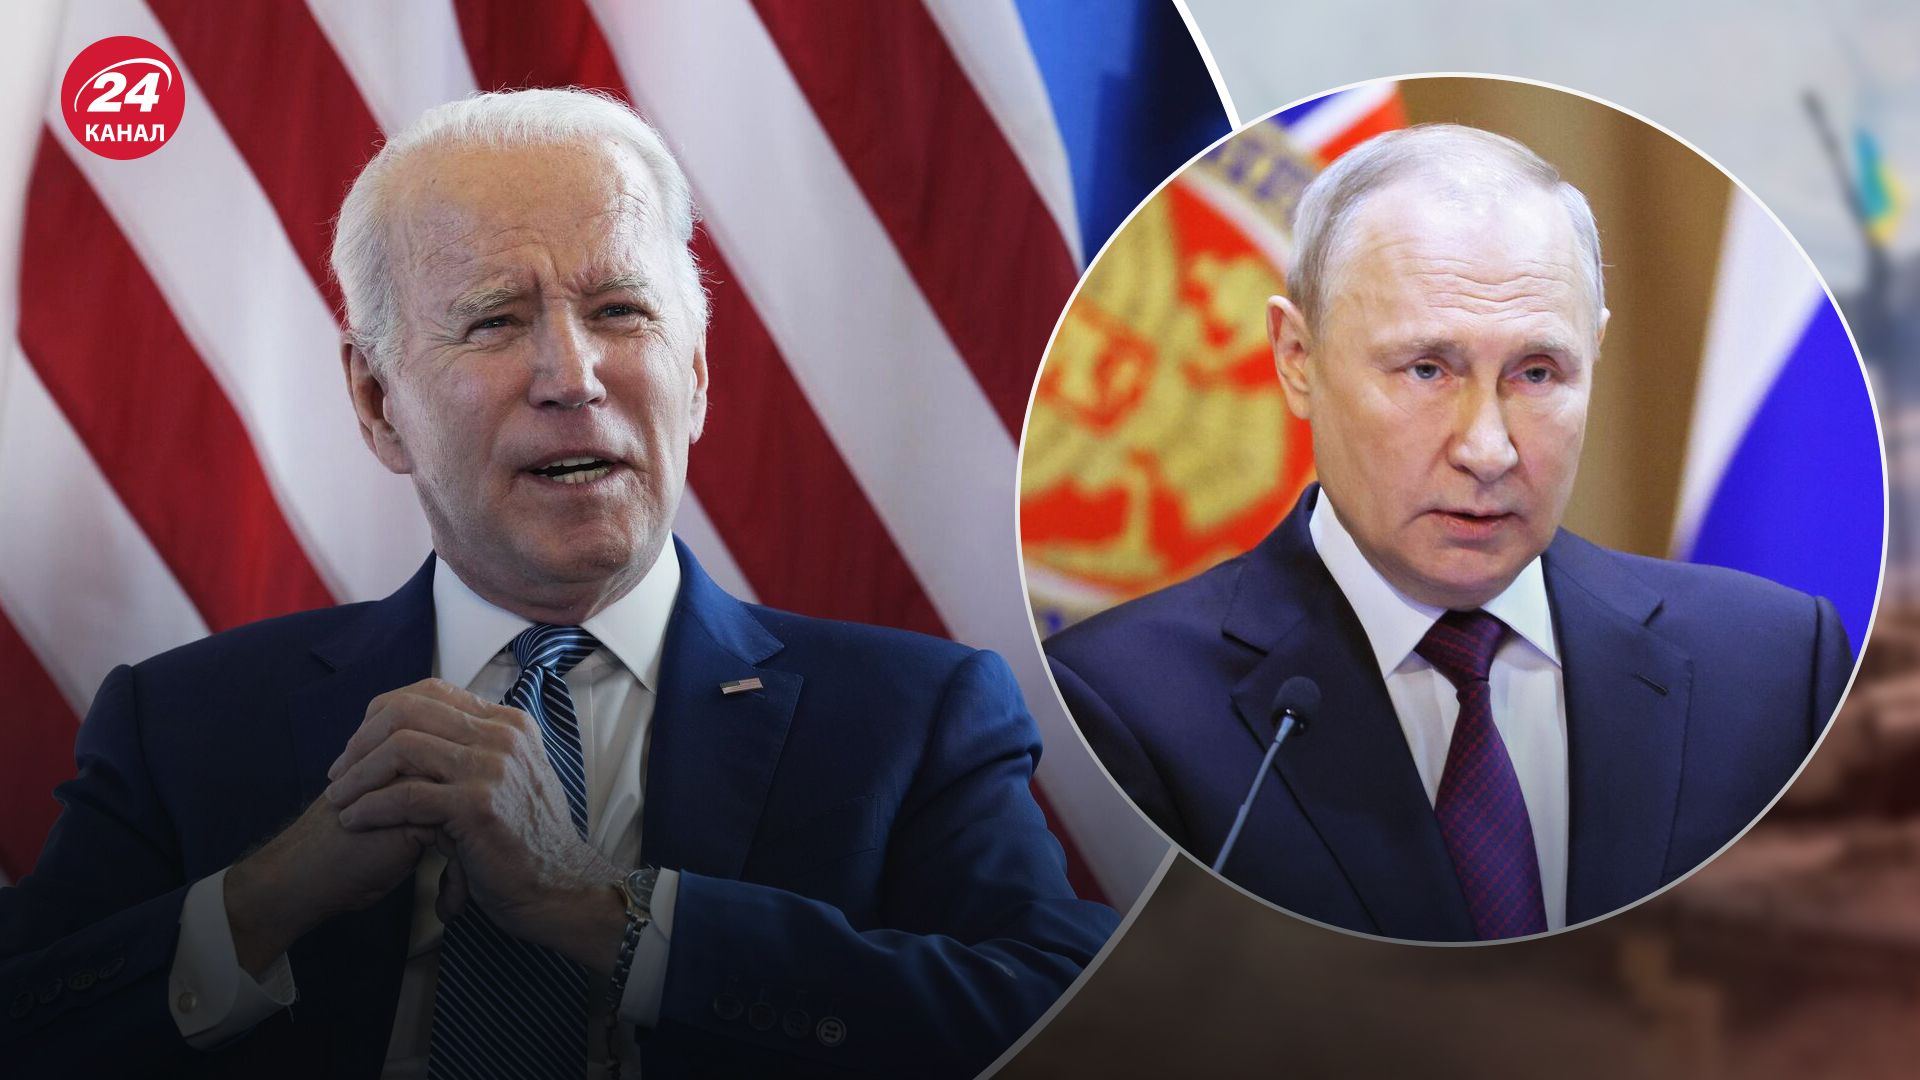 Впереди будут очень сложные времена: как США и союзники оценивают положение России после мятежа - 24 Канал